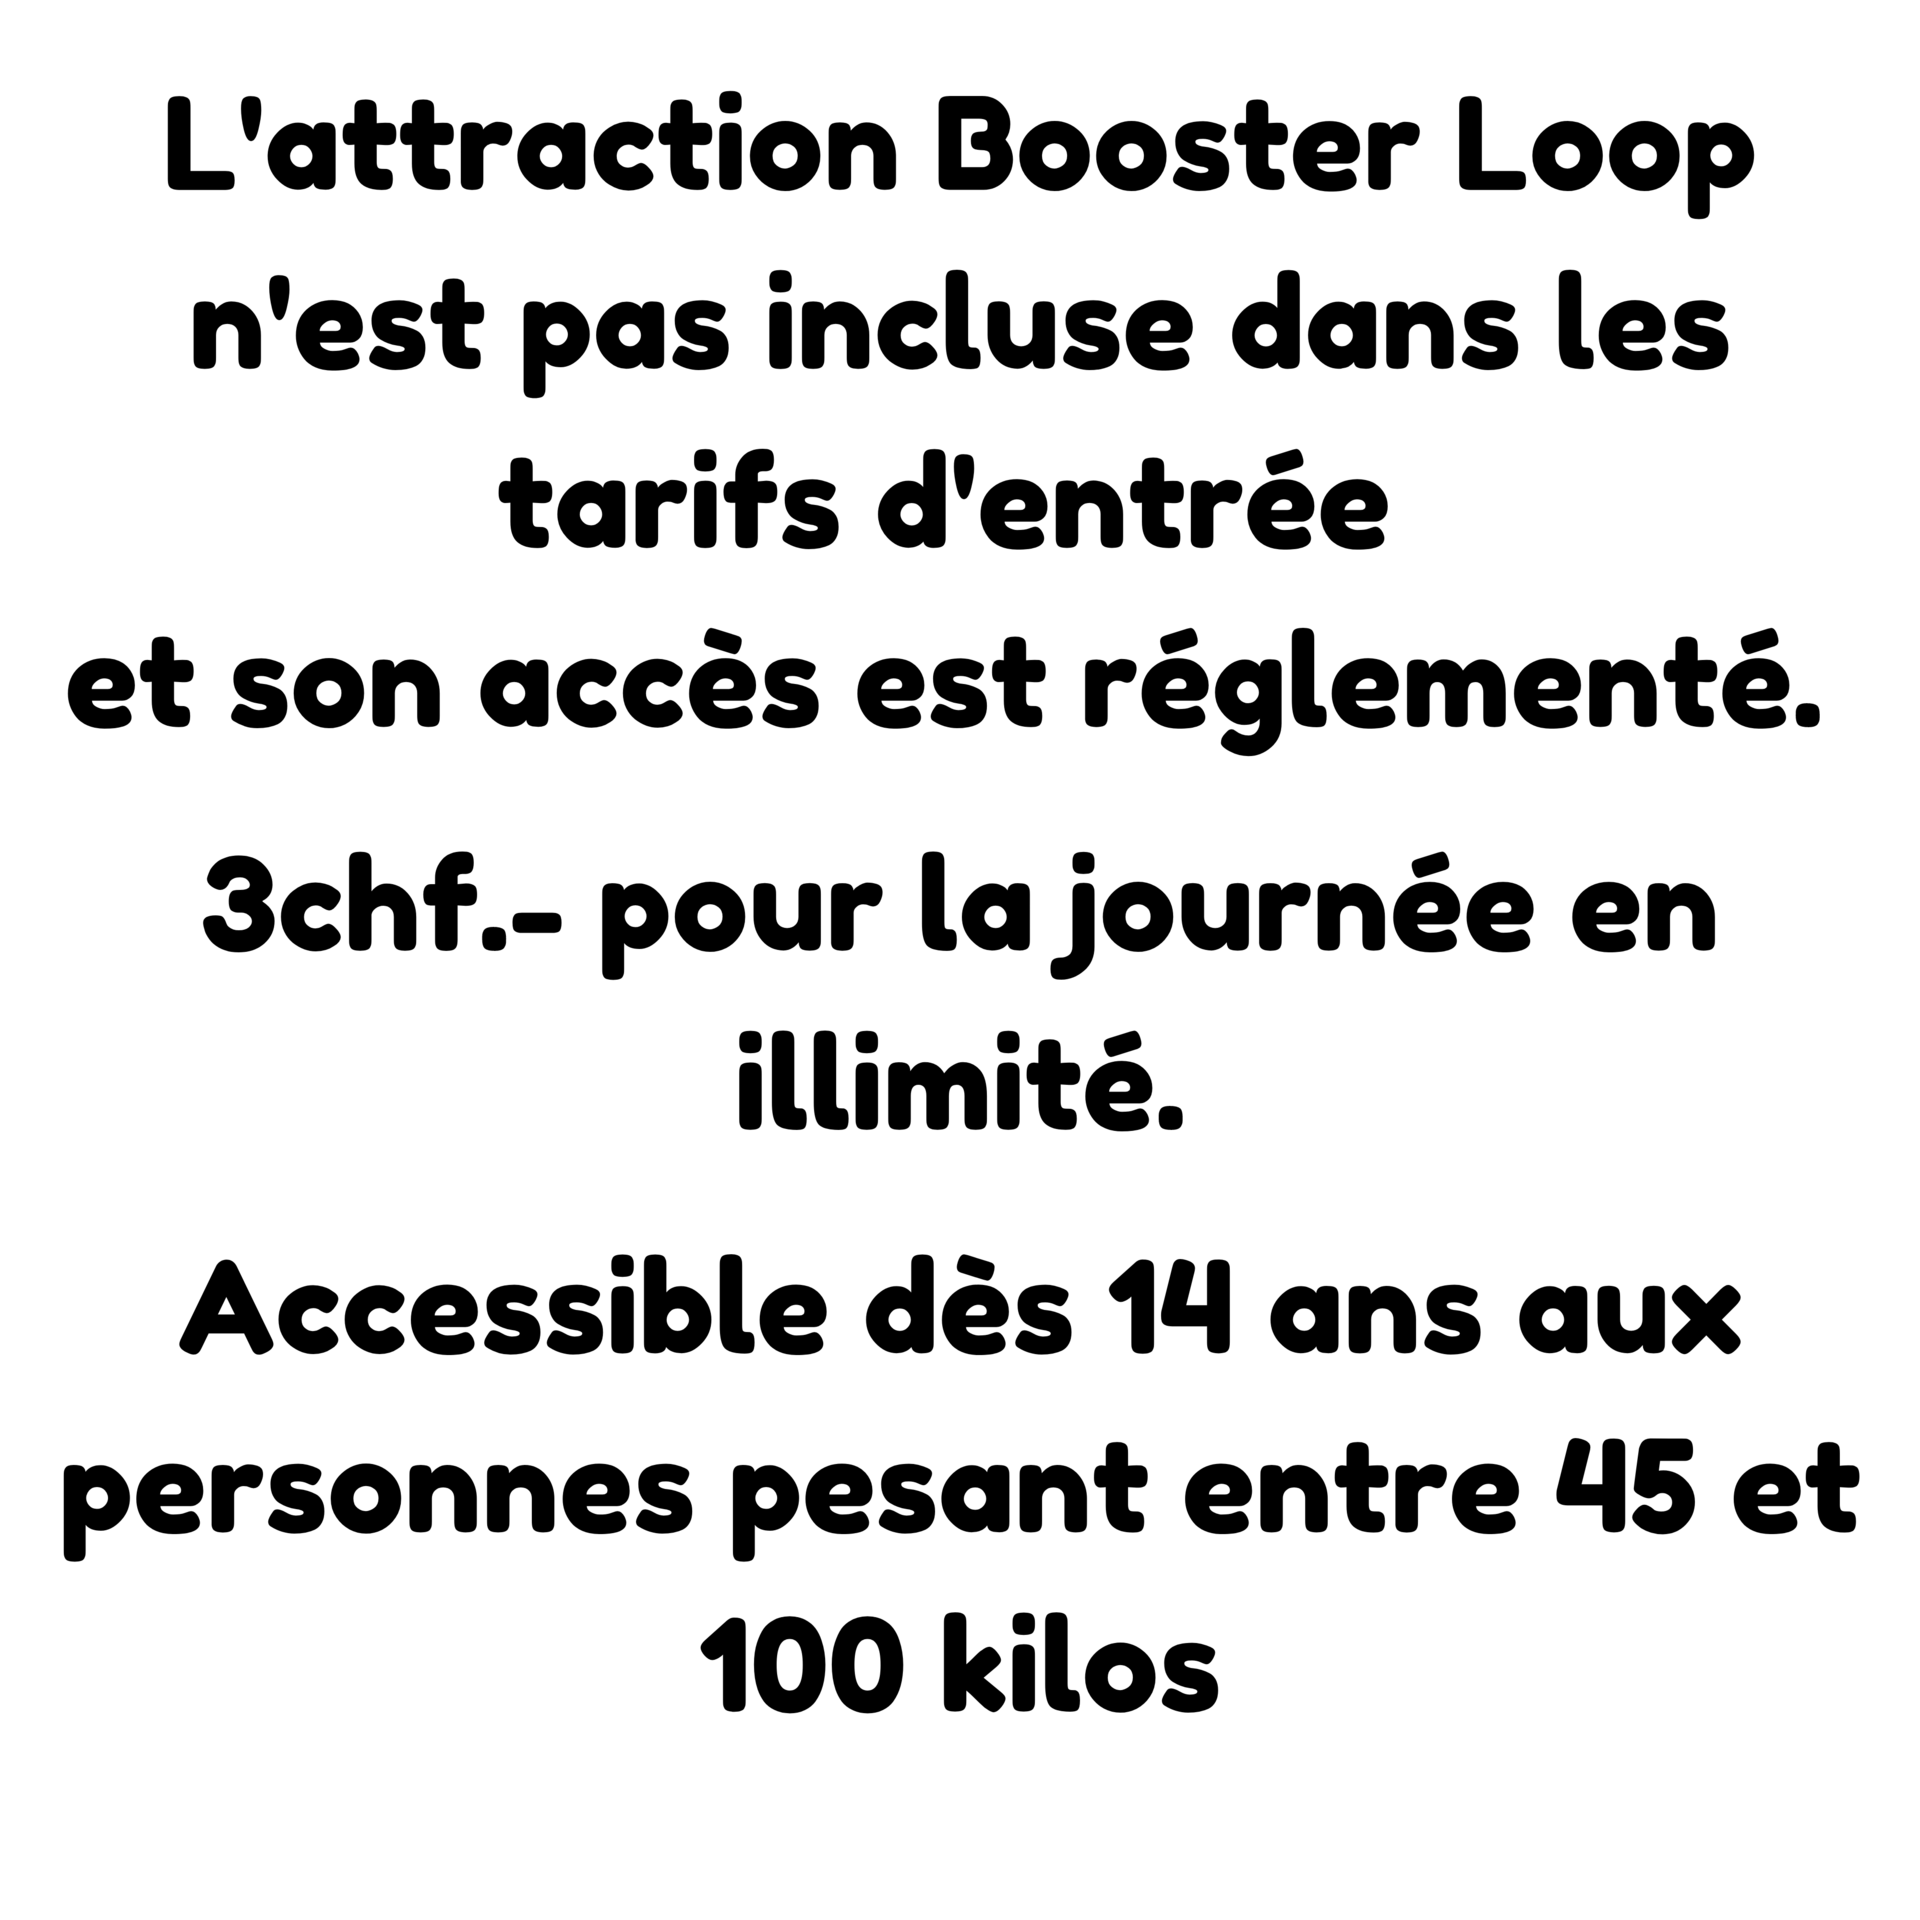 L'attraction Booster Loop n'est pas incluse dans le tarif d'entrée. 3 francs en illimité pour la journée. Accessible dès 14 ans et entre 45 et 100 kilos.